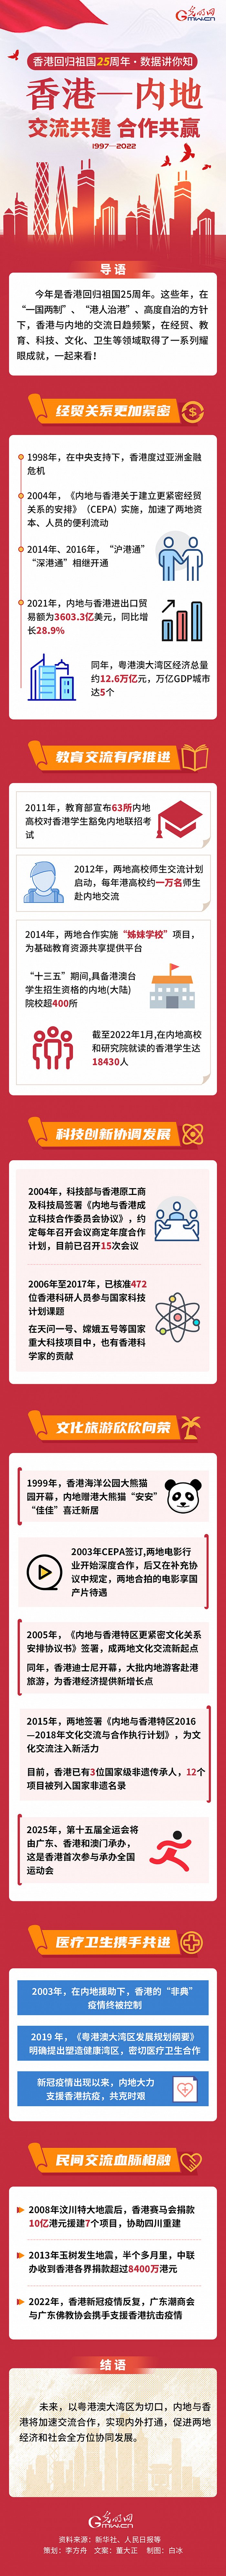 【香港回归祖国25周年·数据讲你知】香港—内地 交流共建 合作共赢